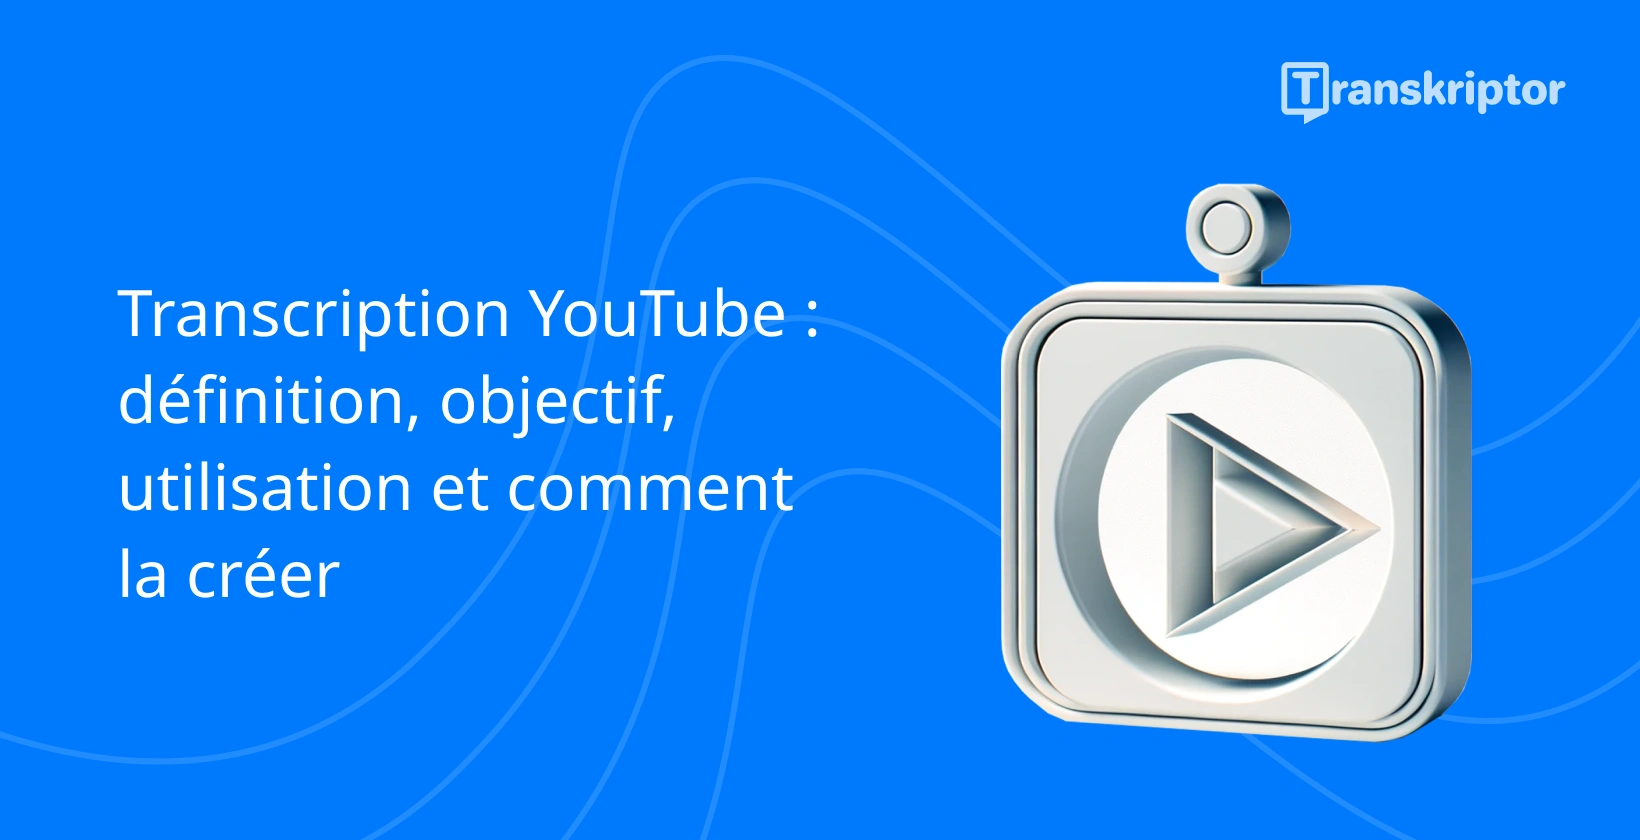 Graphique du guide de transcription YouTube, avec une icône de bouton de lecture pour représenter le contenu vidéo.